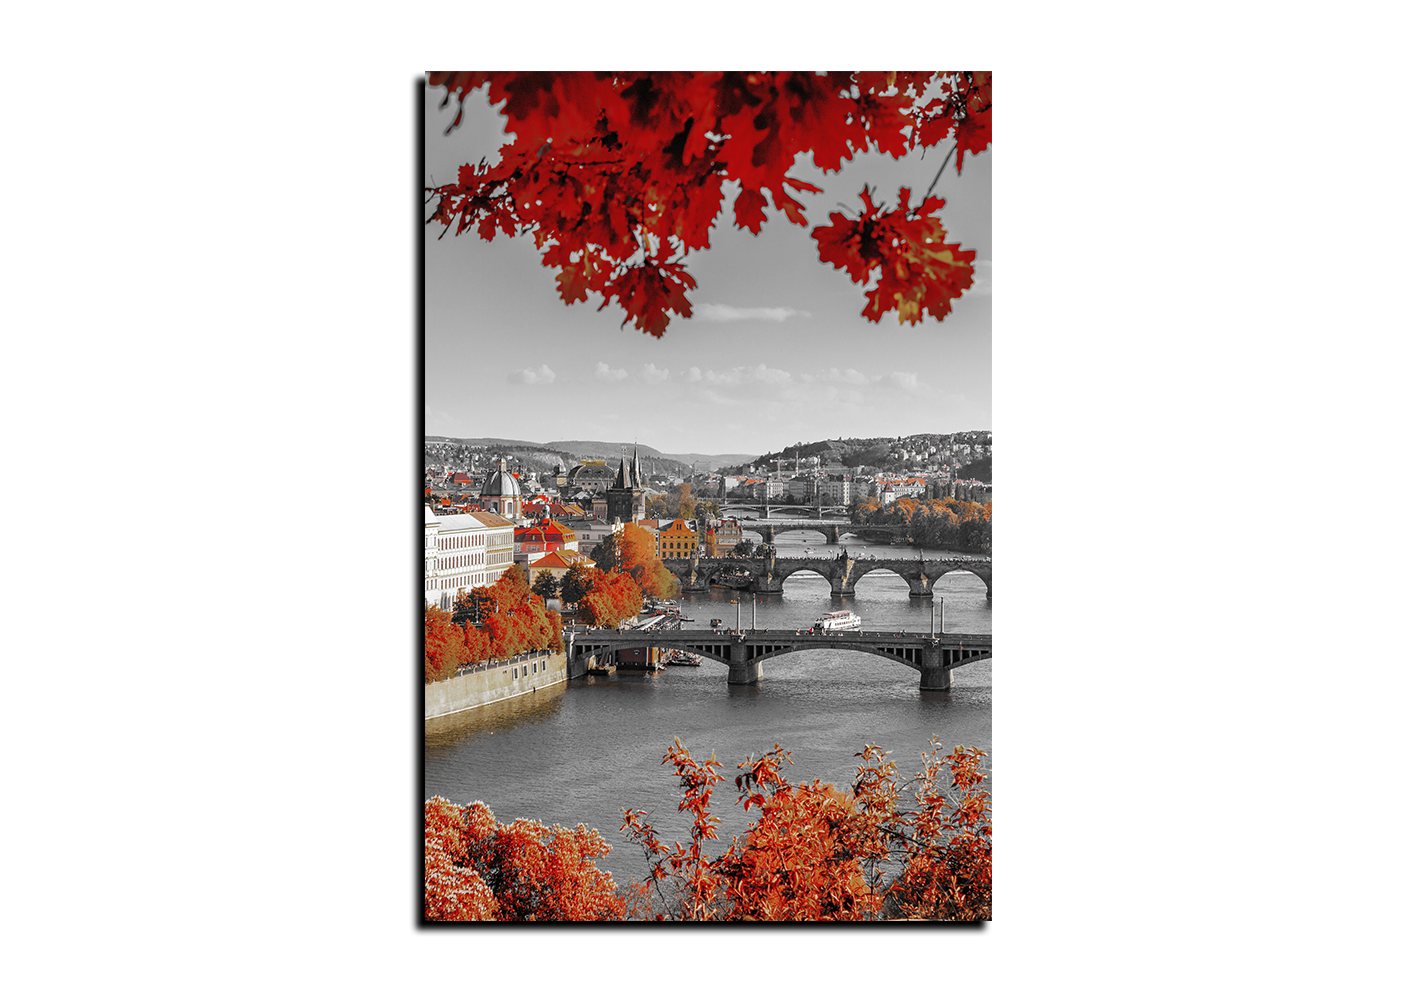 Obraz na plátně - Řeka Vltava a Karlův most - obdélník